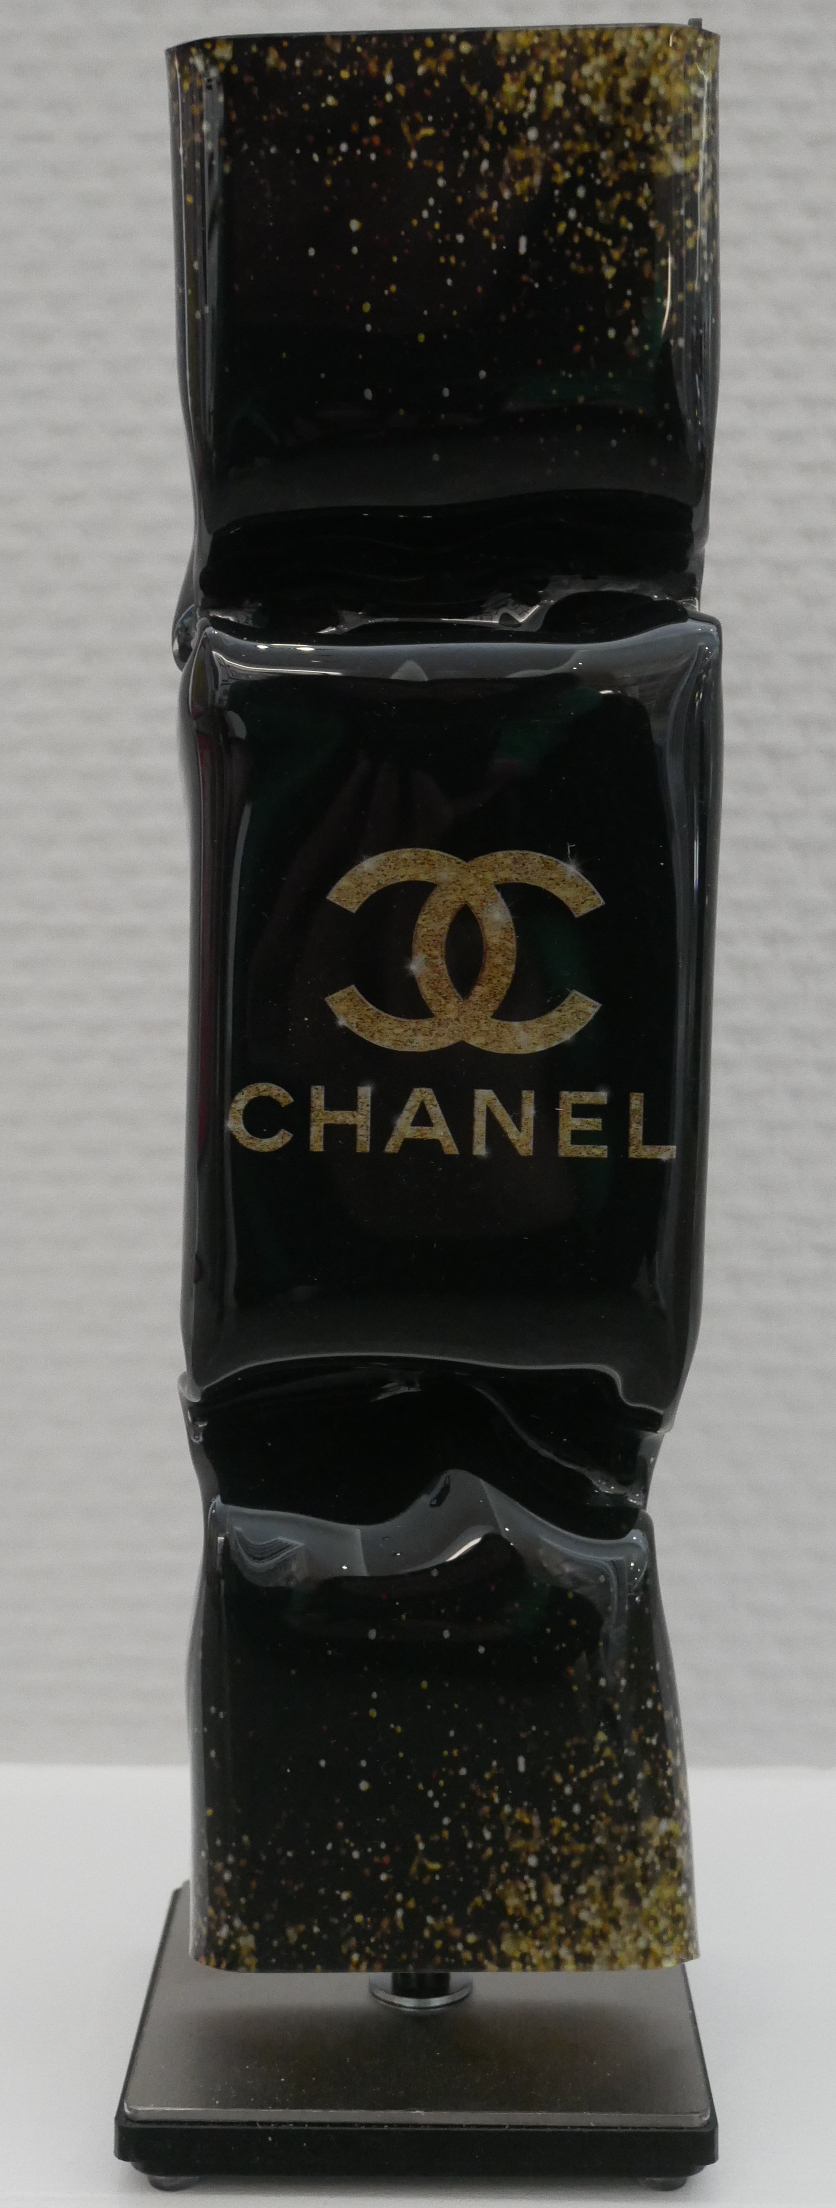 Art Candy - Chanel, glitter